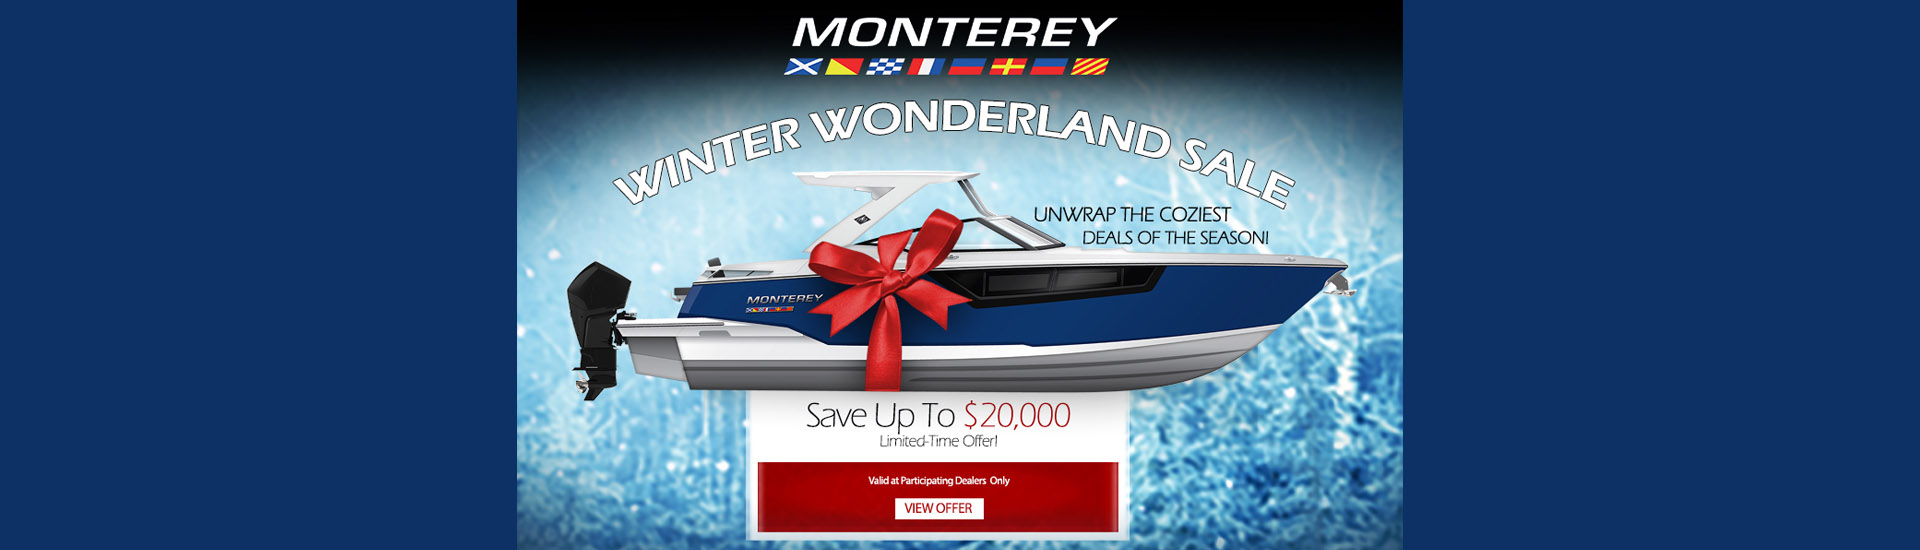 Monterey Boats Winter Wonderland Sale